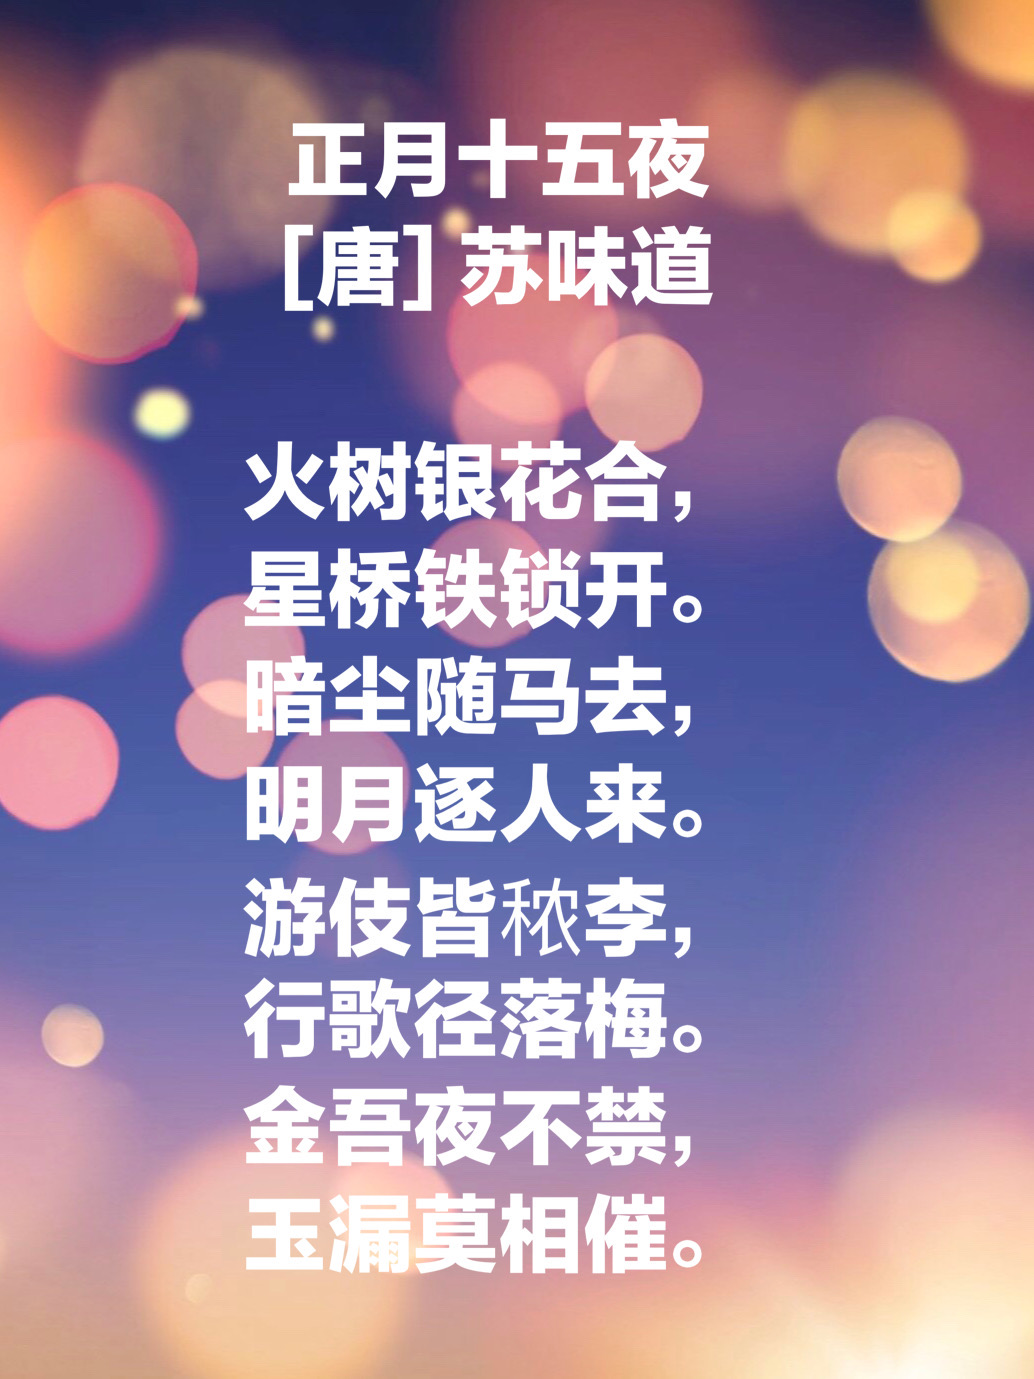 今日元宵佳节，遇见最美的十首元宵诗词，心中团圆